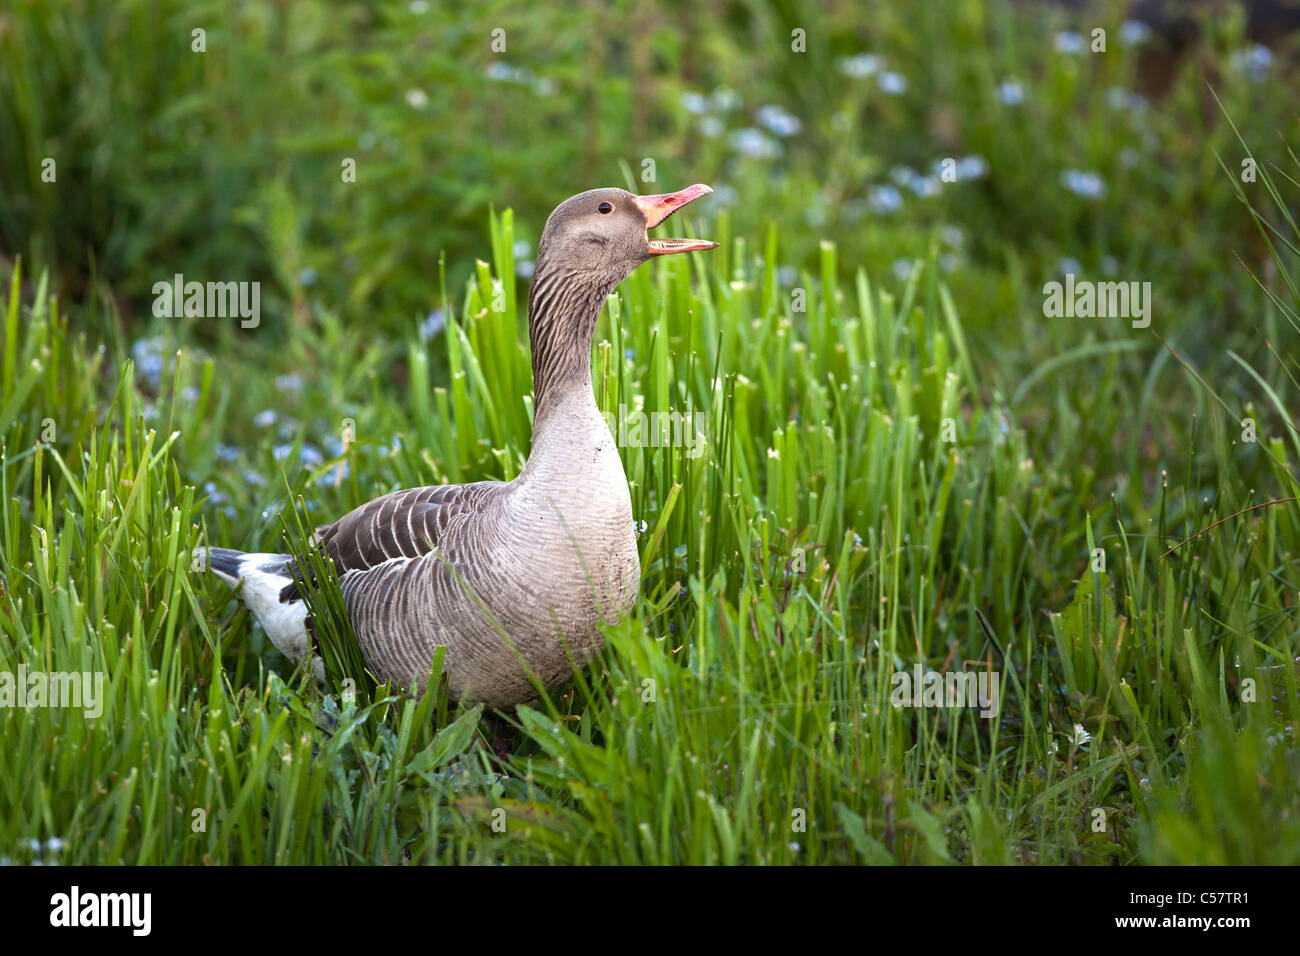 The Netherlands, Sluis, National Park called Zouweboezem. Greylag goose, Anser anser. Stock Photo